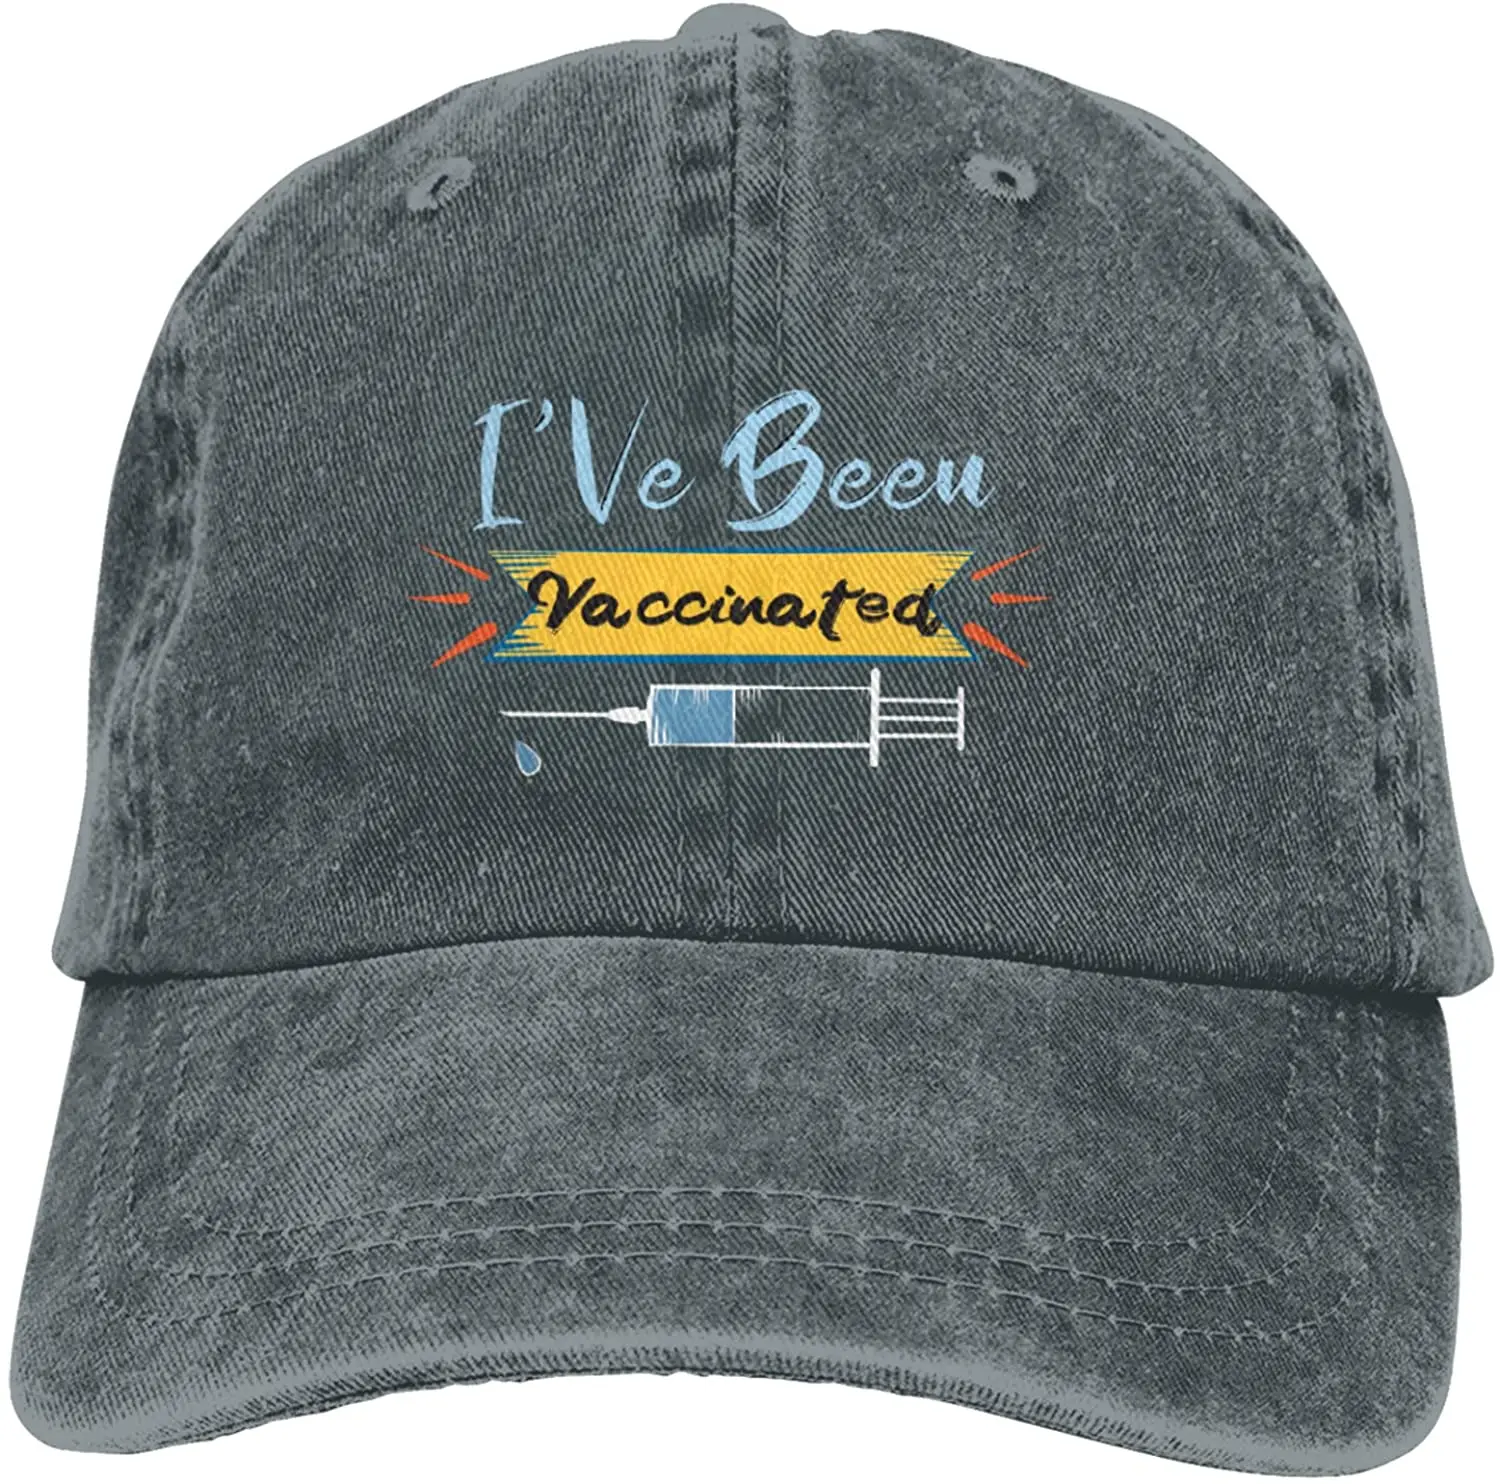 

I've Been Vaccinated Hat Vintage Denim Baseball Caps Cotton Dad Hat Adjustable Wash Cowboy Hat Unisex